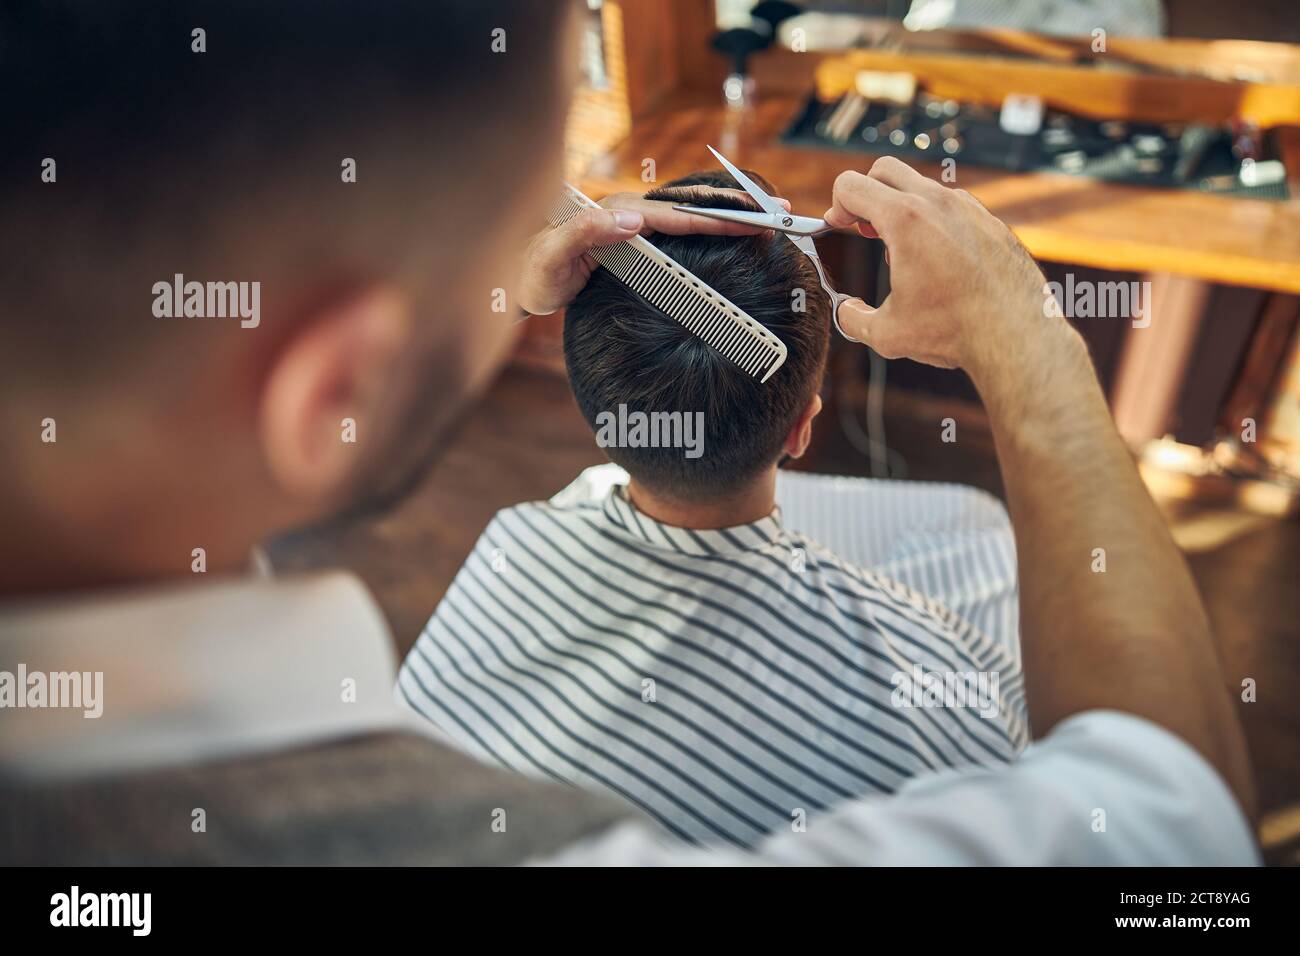 Coiffeur professionnel travaillant sur une coupe de cheveux fraîche pour son client Banque D'Images